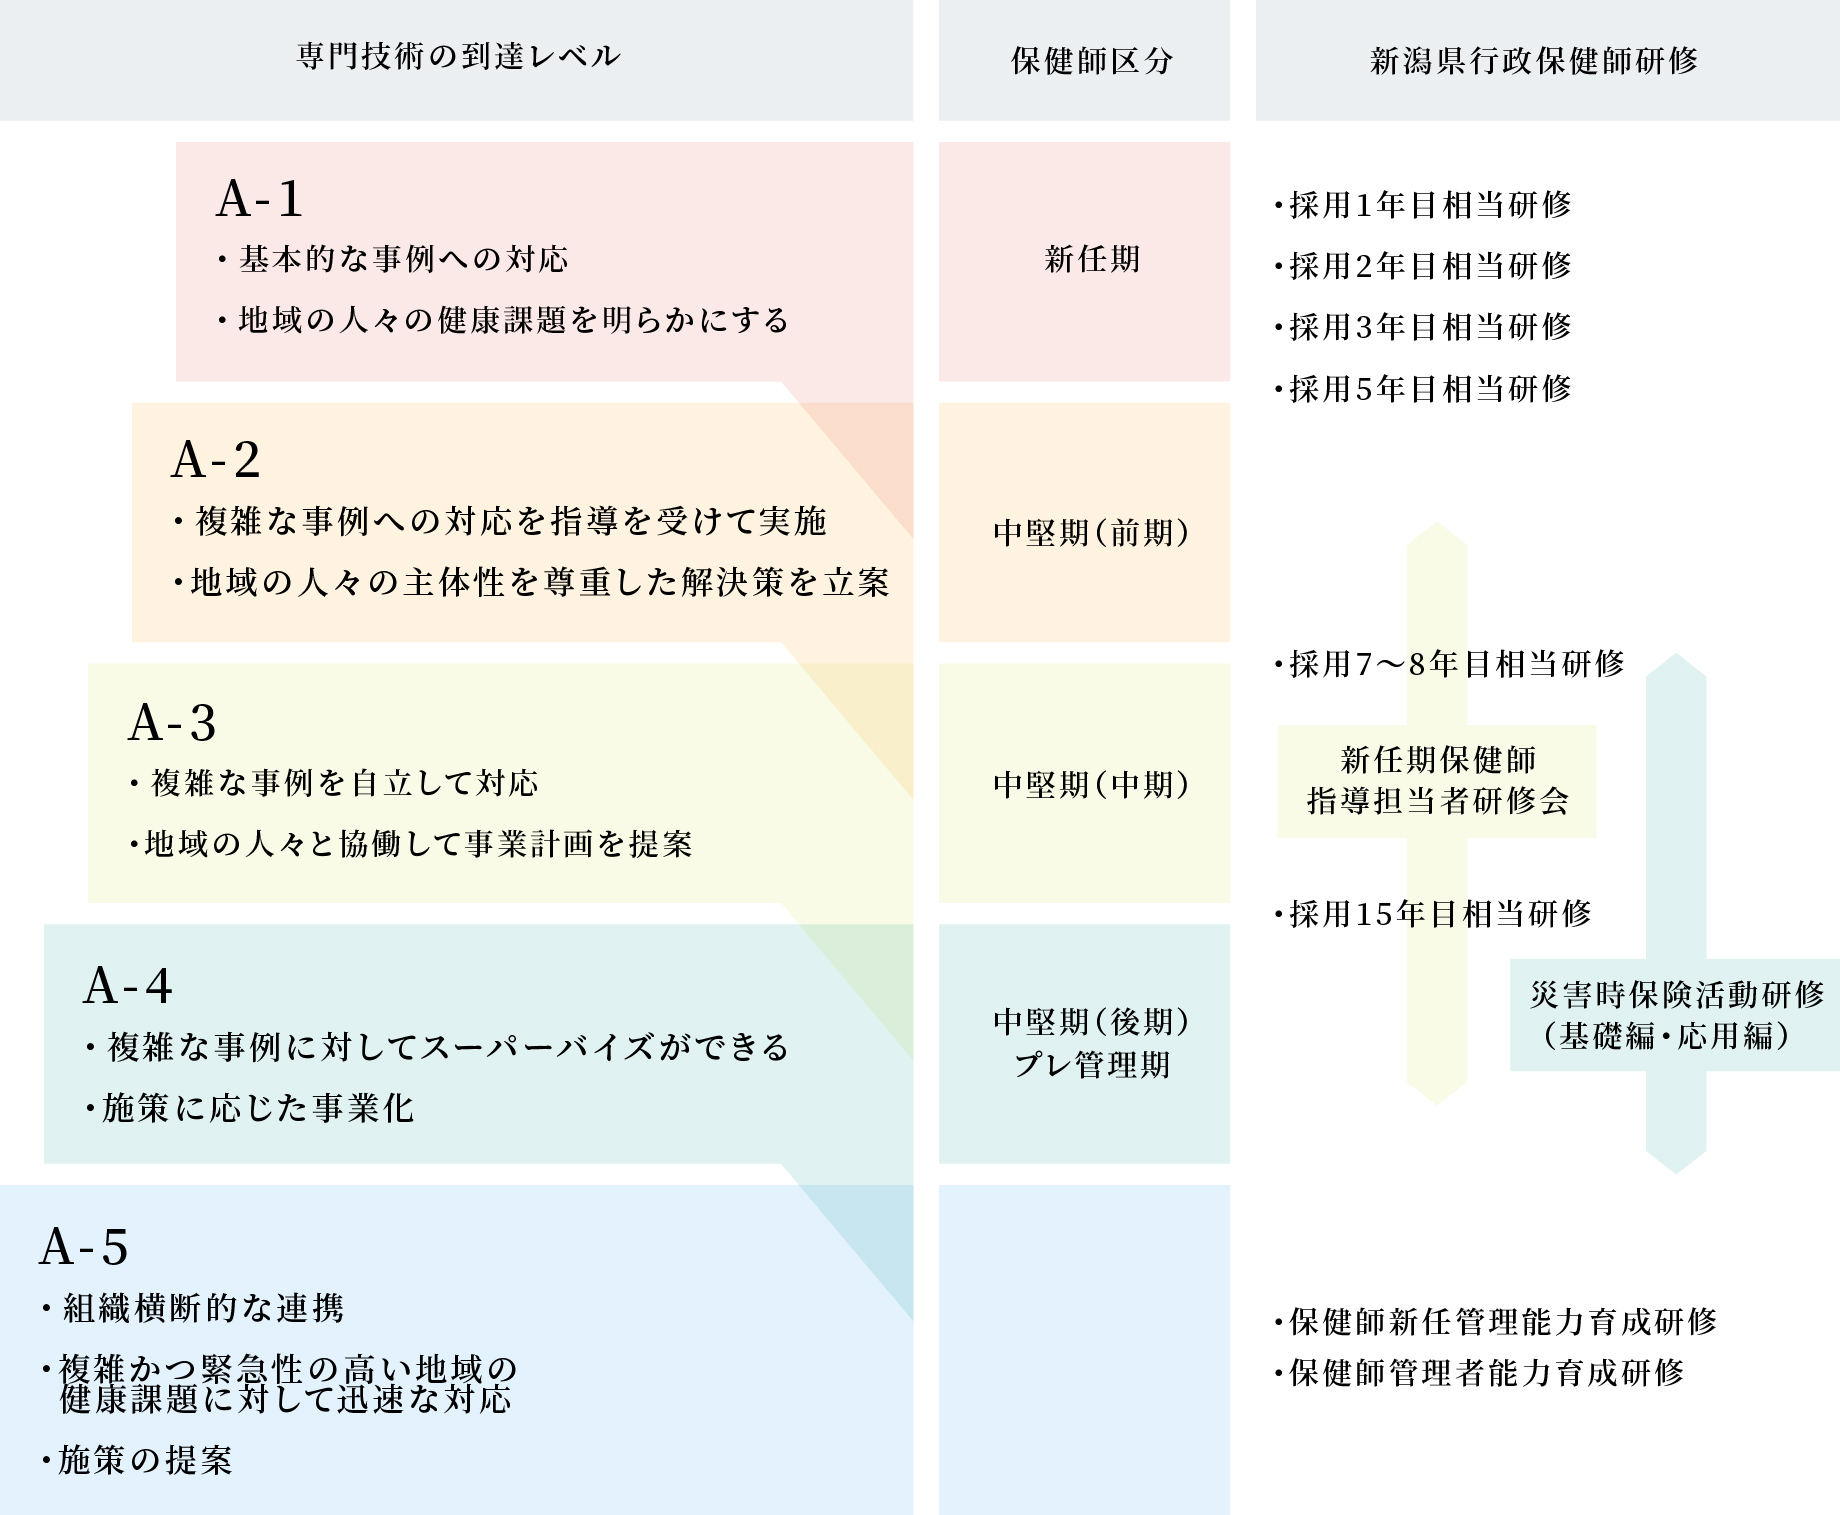 新潟県職員保健師のキャリアパスの図